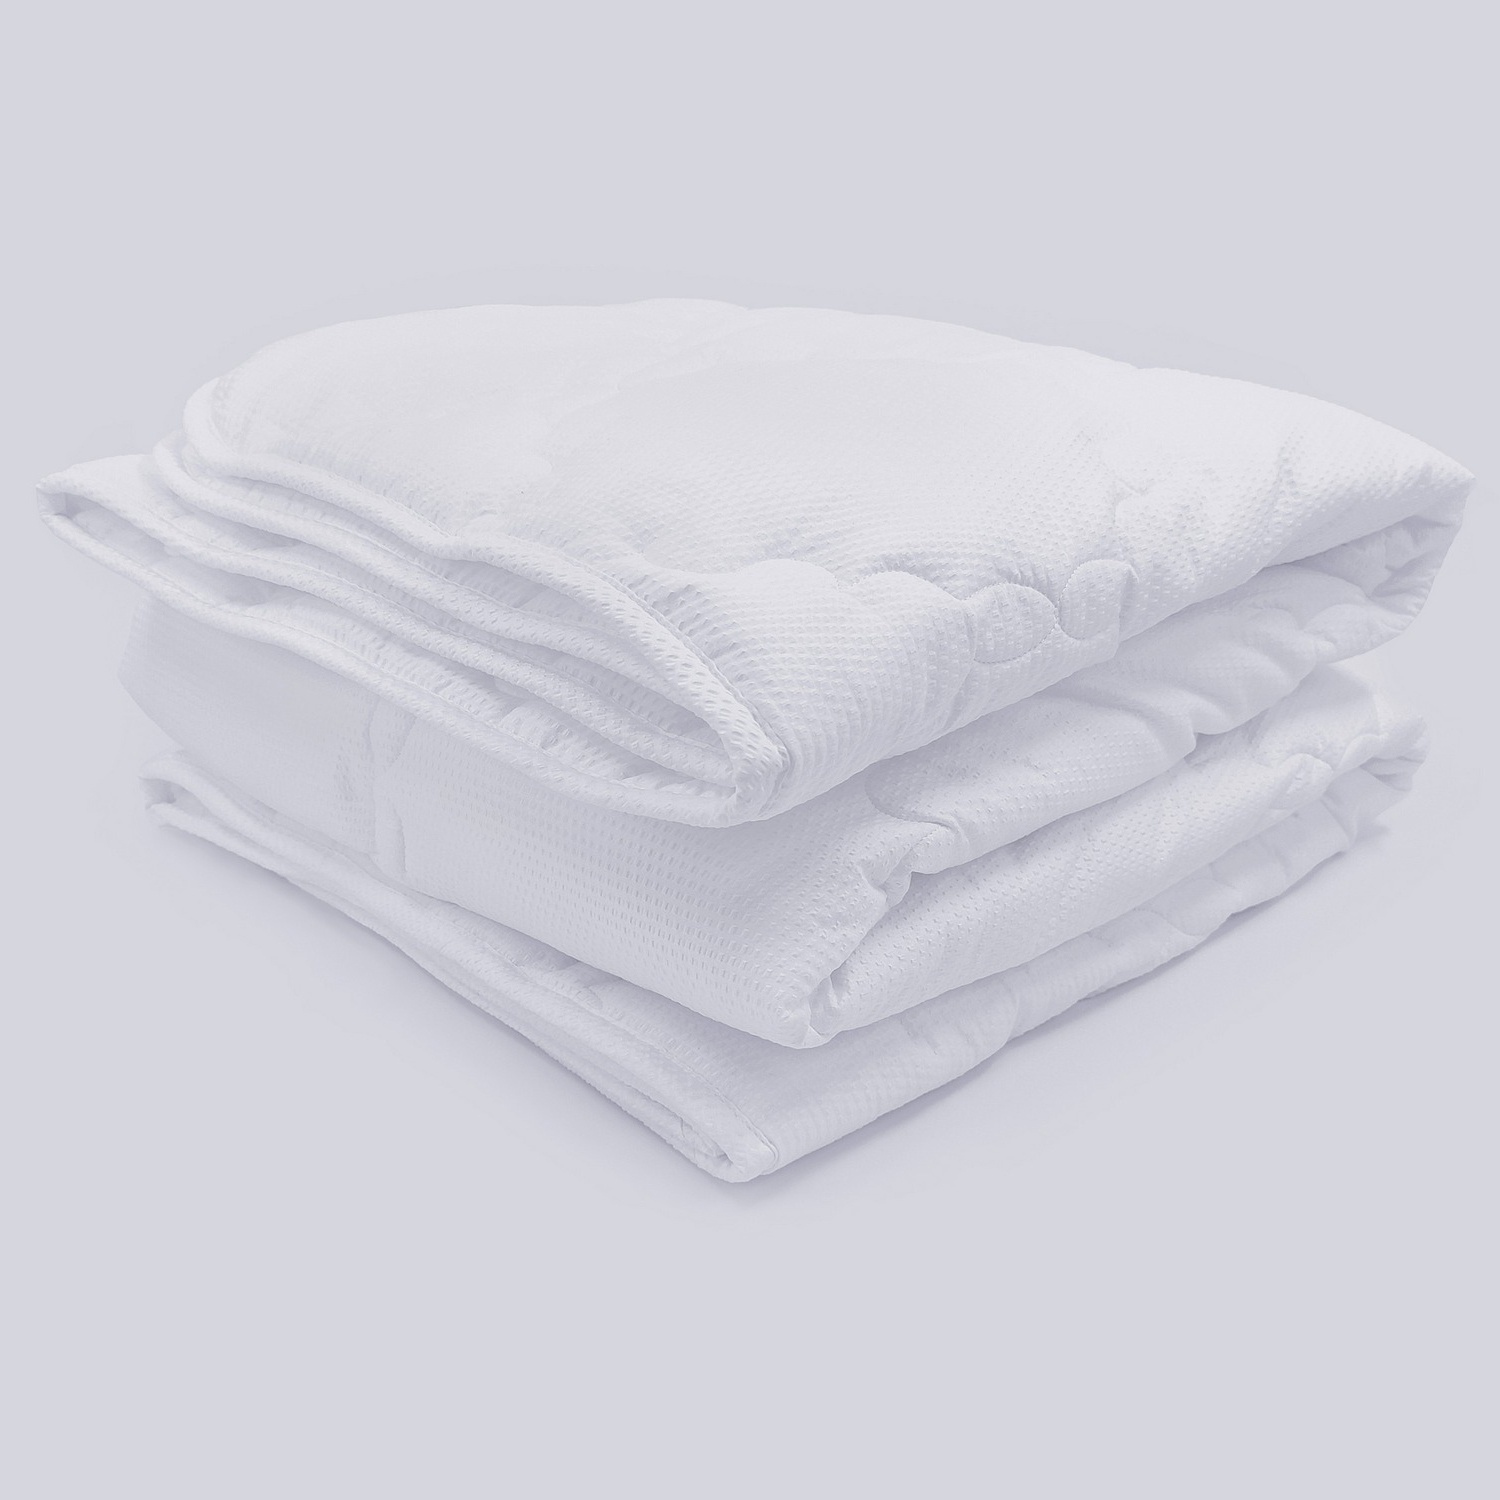 Одеяло Теплое Relax warm цвет: белый (200х220 см), размер 200х220 см jsl882907 Одеяло Теплое Relax warm цвет: белый (200х220 см) - фото 1